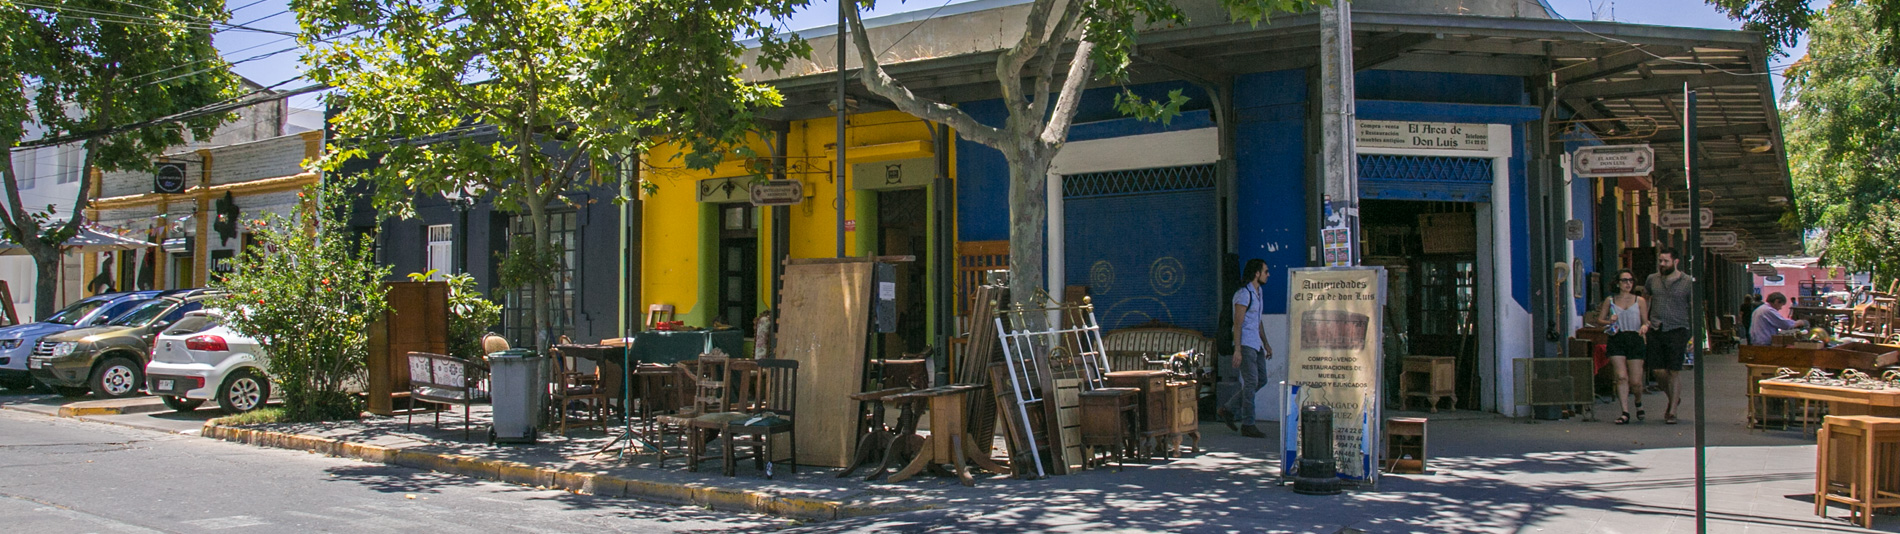 Barrio italia - Restauración de Muebles y Antiguedades - Santiago